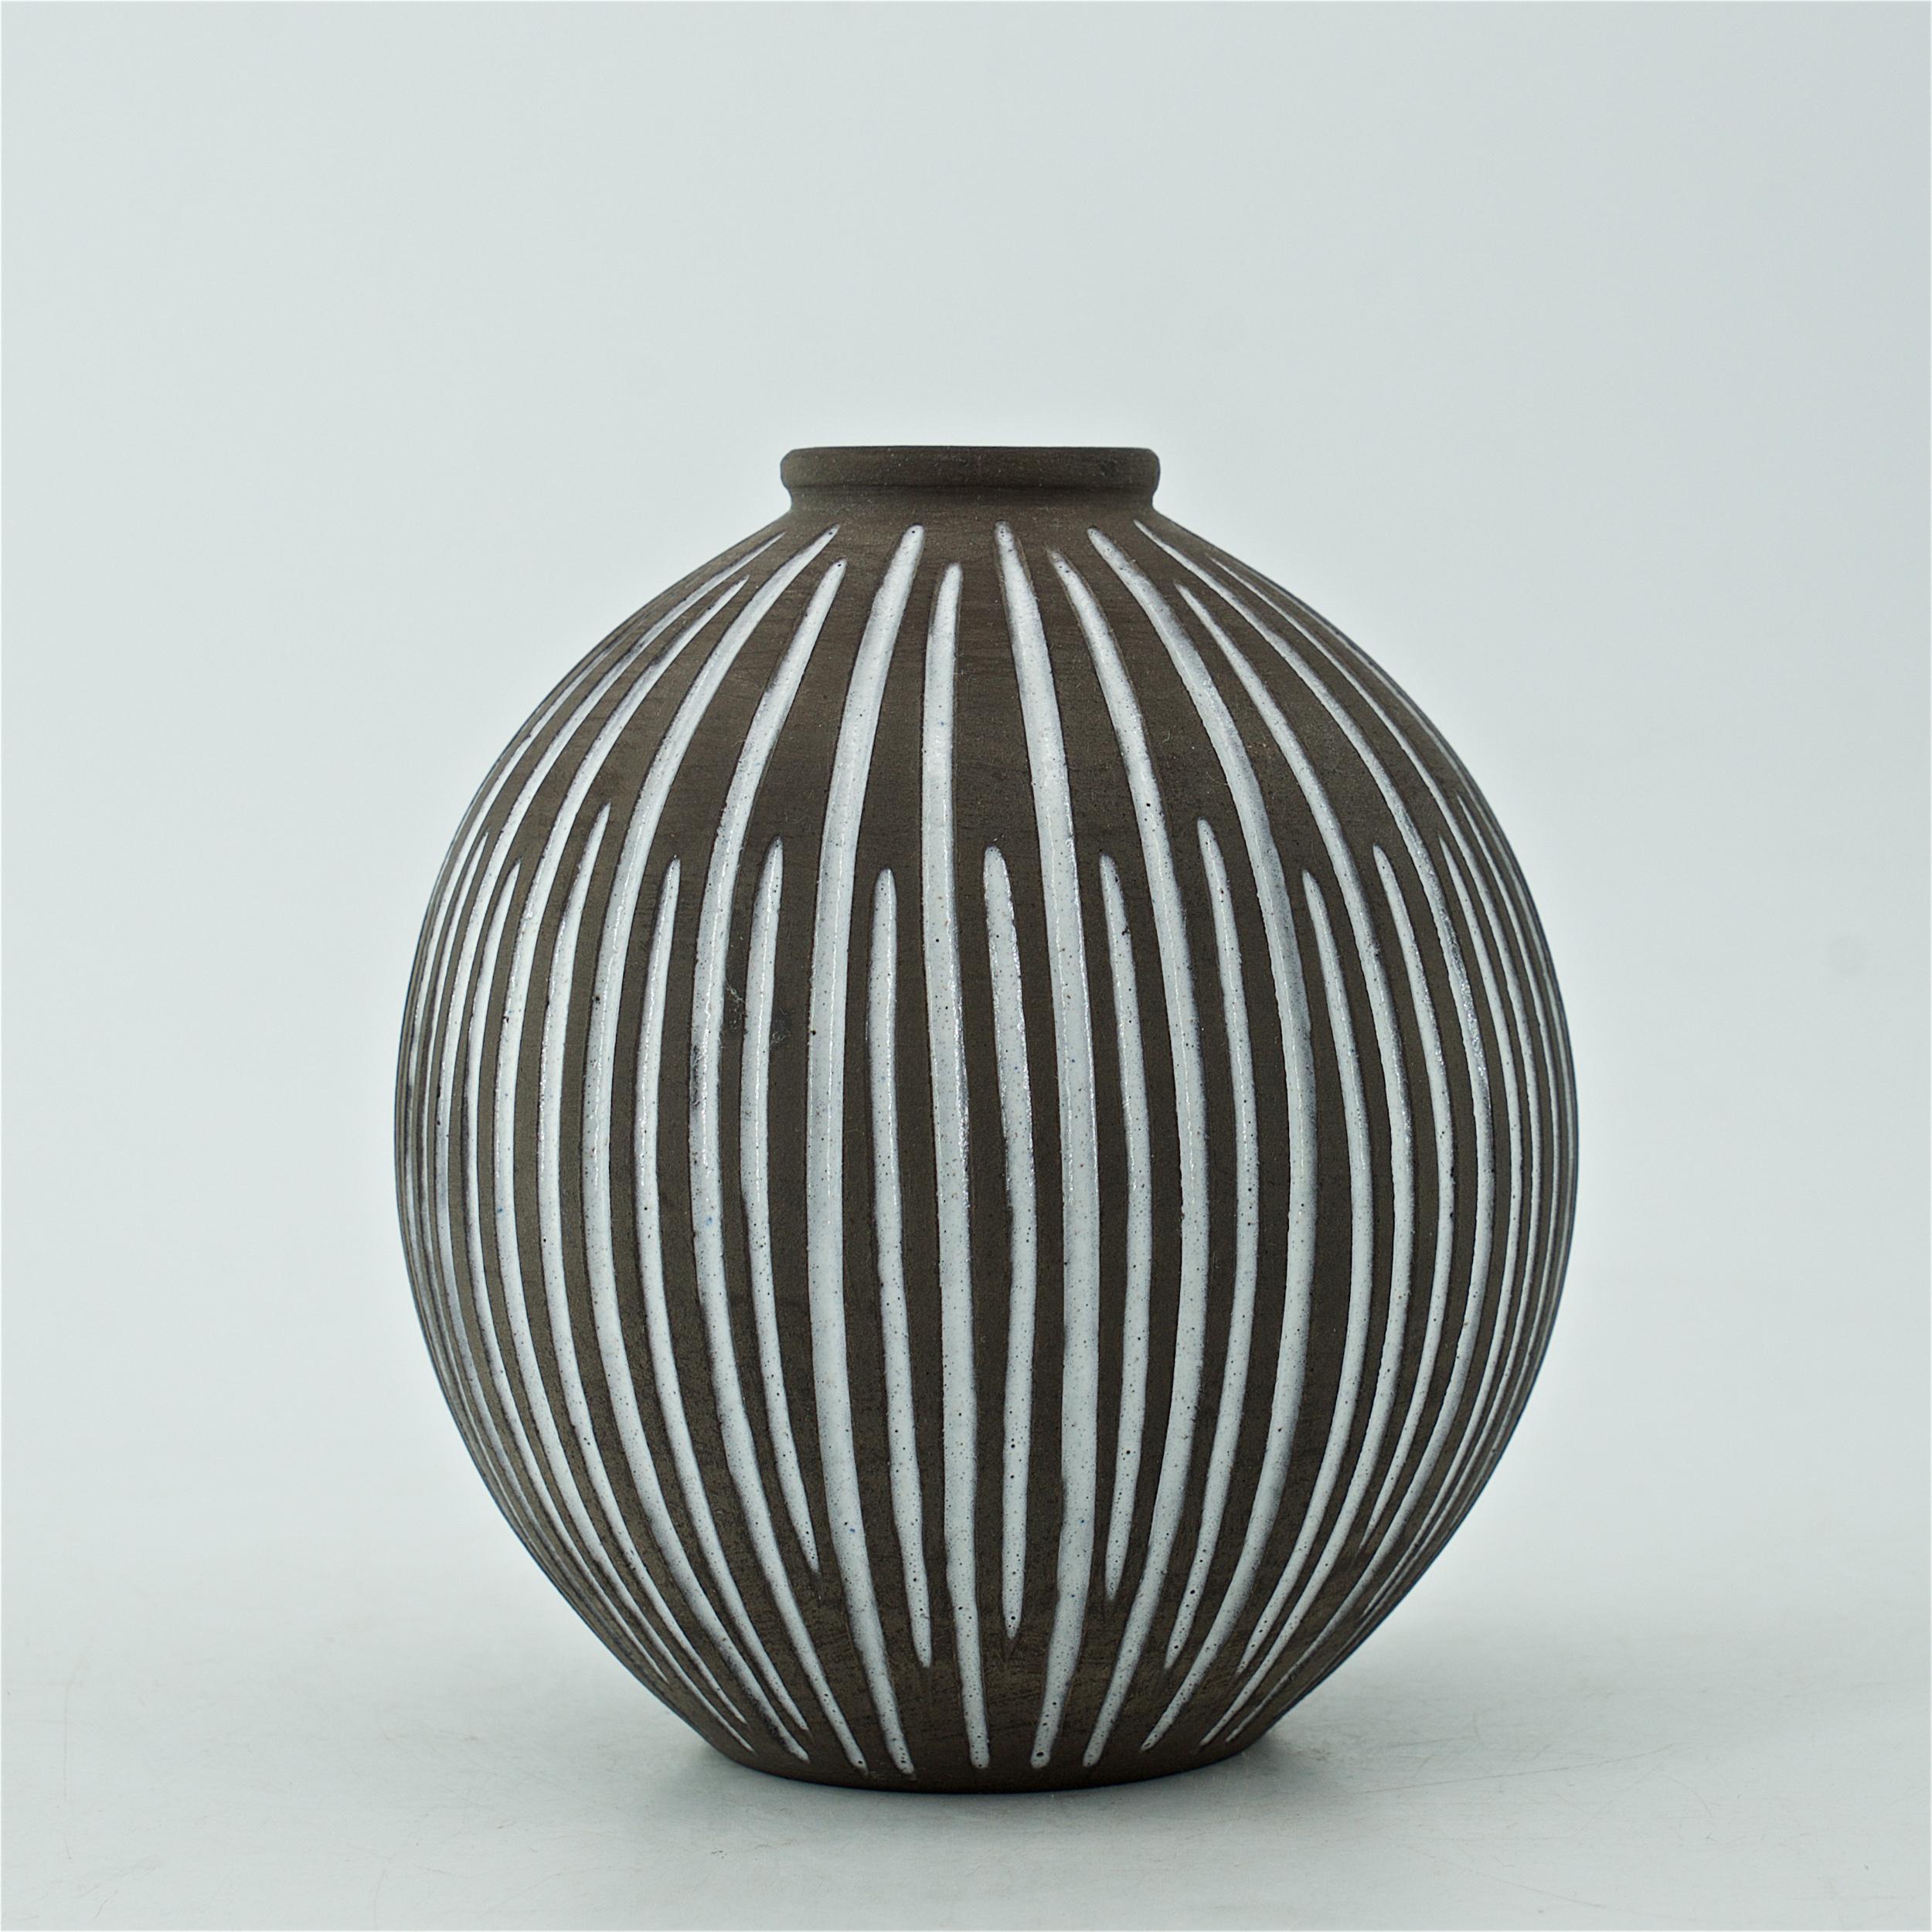 Scandinavian Modern 1960s Danish Female Artist Studio Pottery Gourd Vase Sphere Stoneware Sculpture For Sale